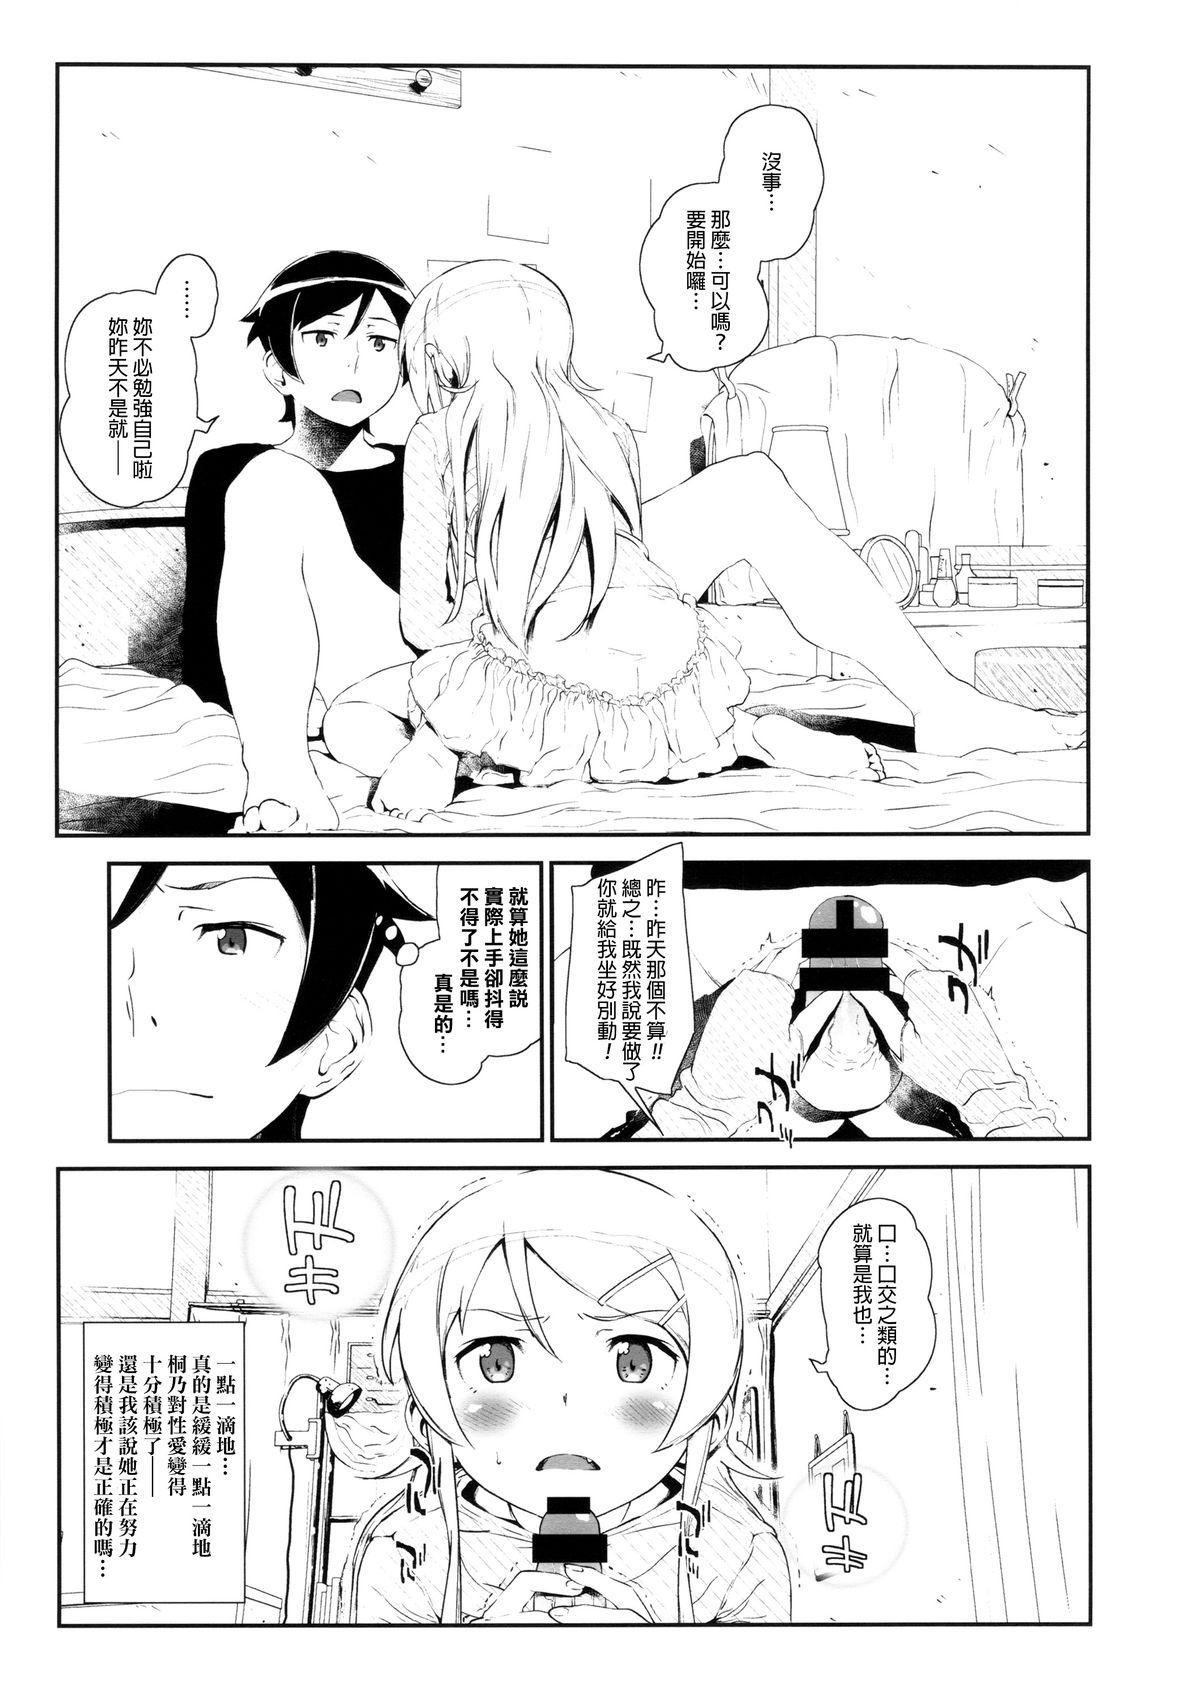 Nudity Hoshikuzu Namida 3 - Ore no imouto ga konna ni kawaii wake ga nai Rabuda - Page 8